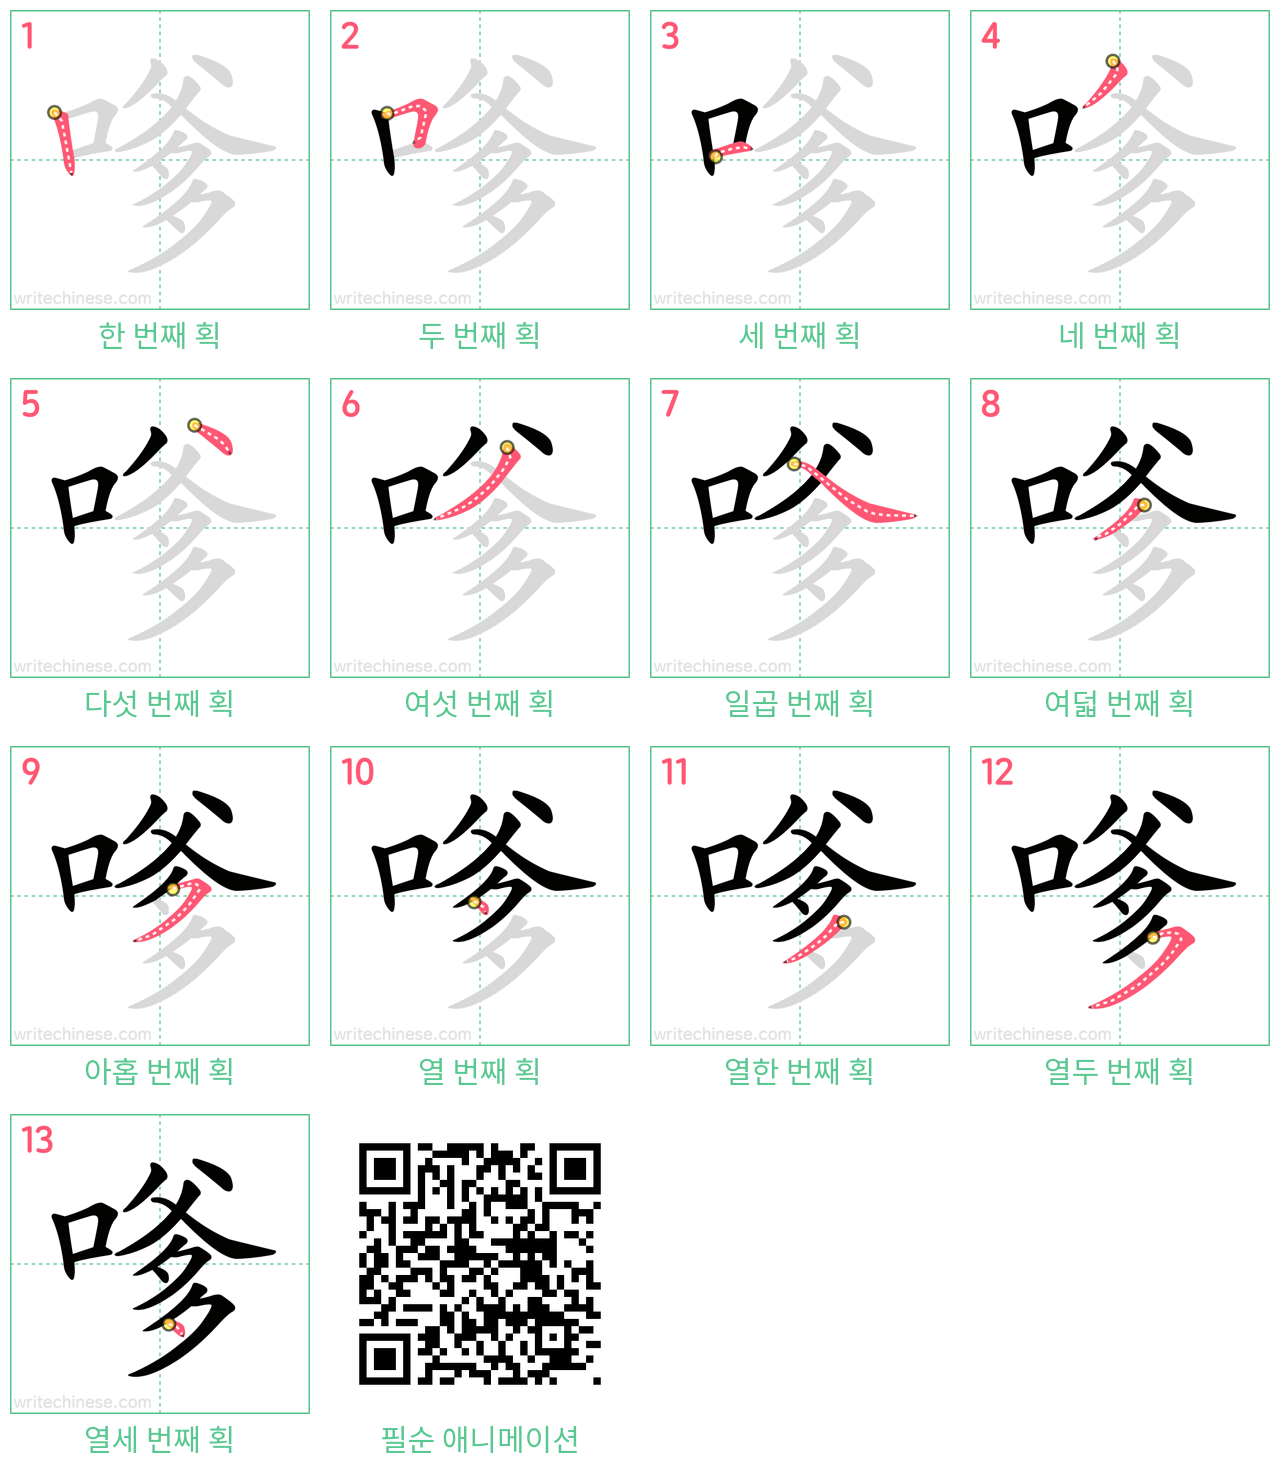 嗲 step-by-step stroke order diagrams